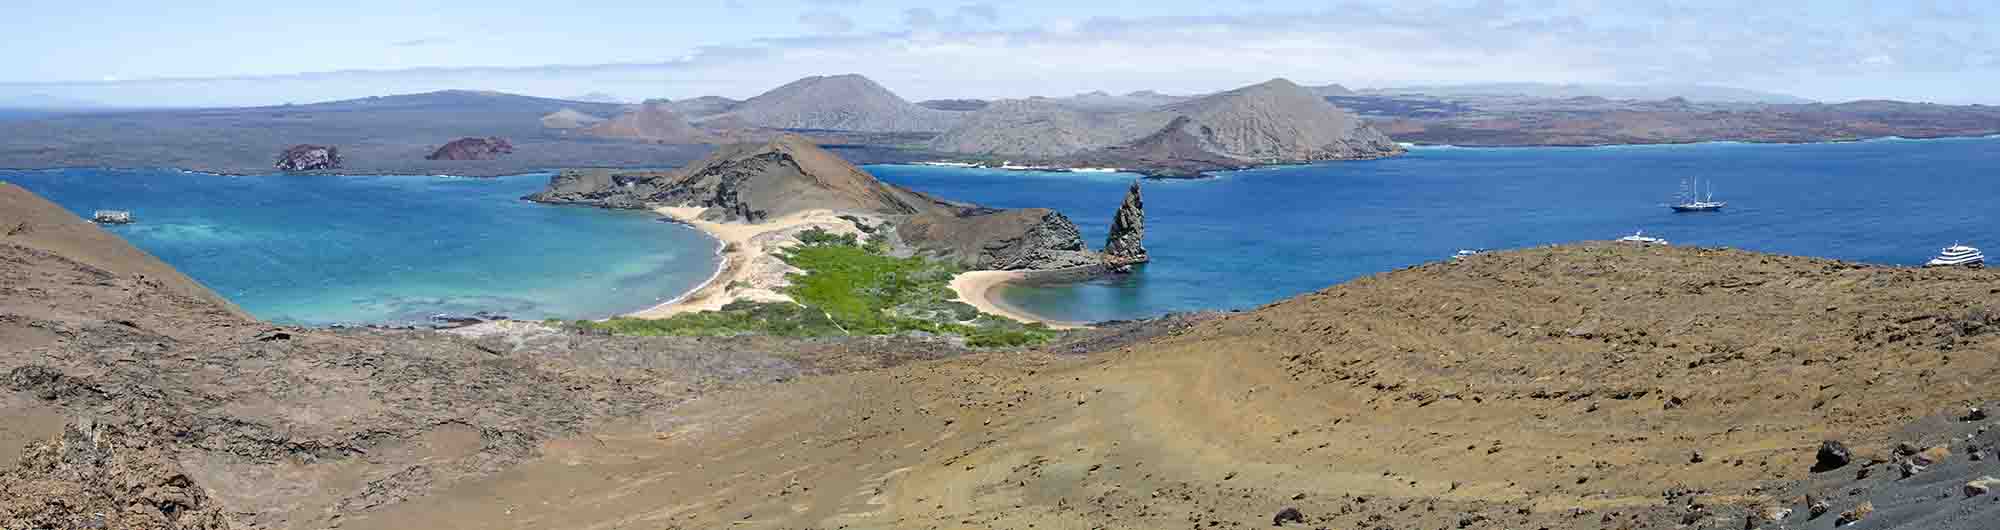 19 - Ecuador - islas Galapagos - isla Bartolome